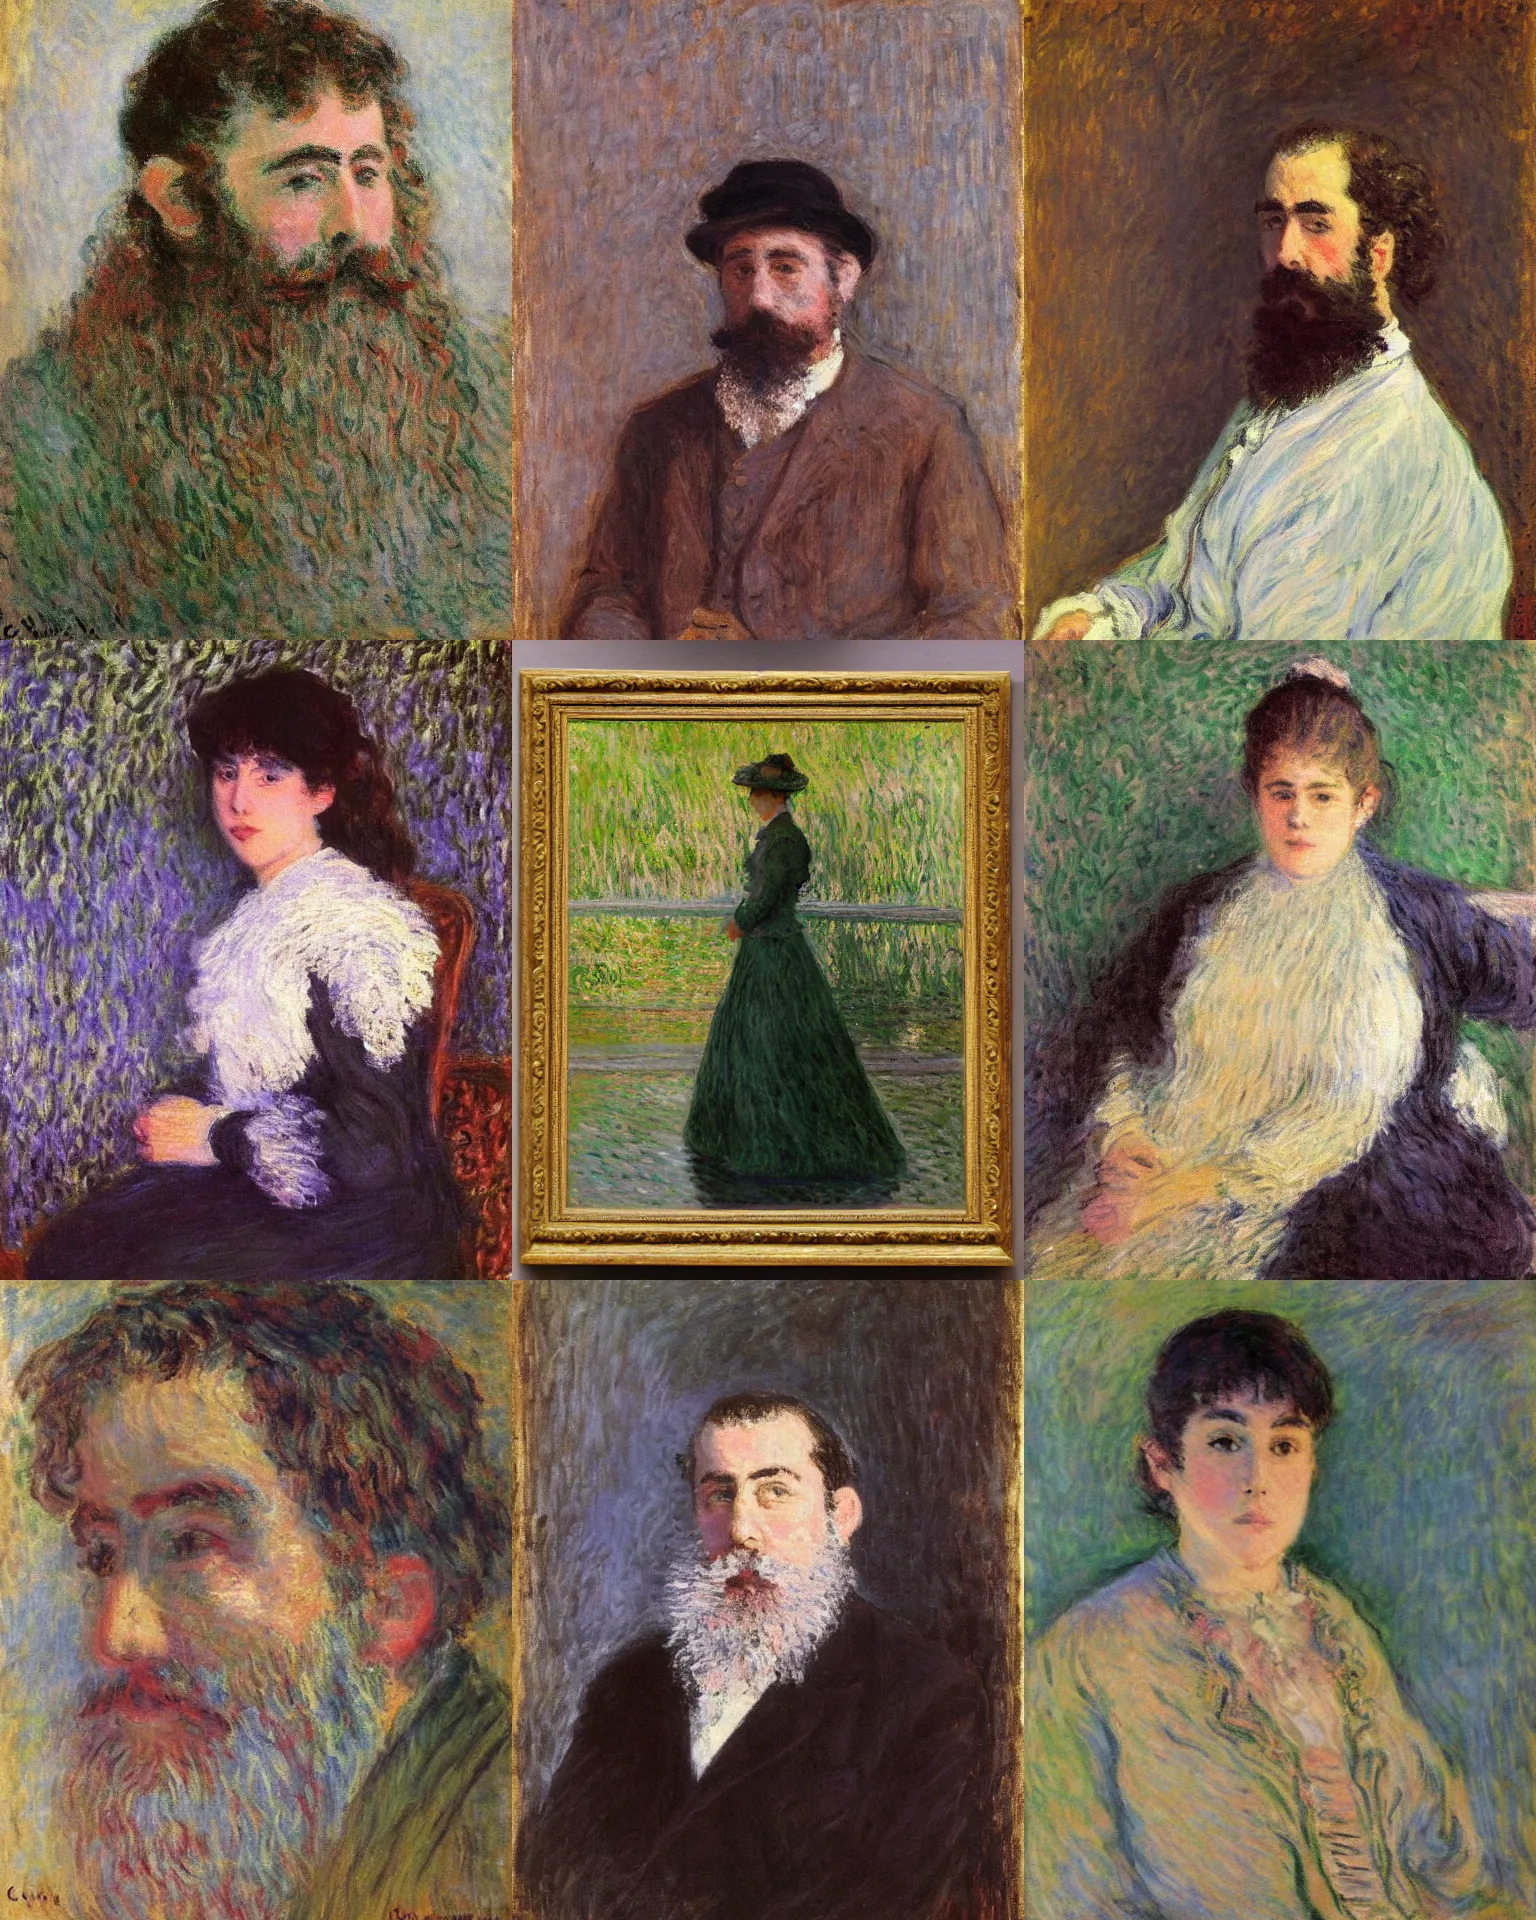 Prompt: A portrait by Claude Monet.